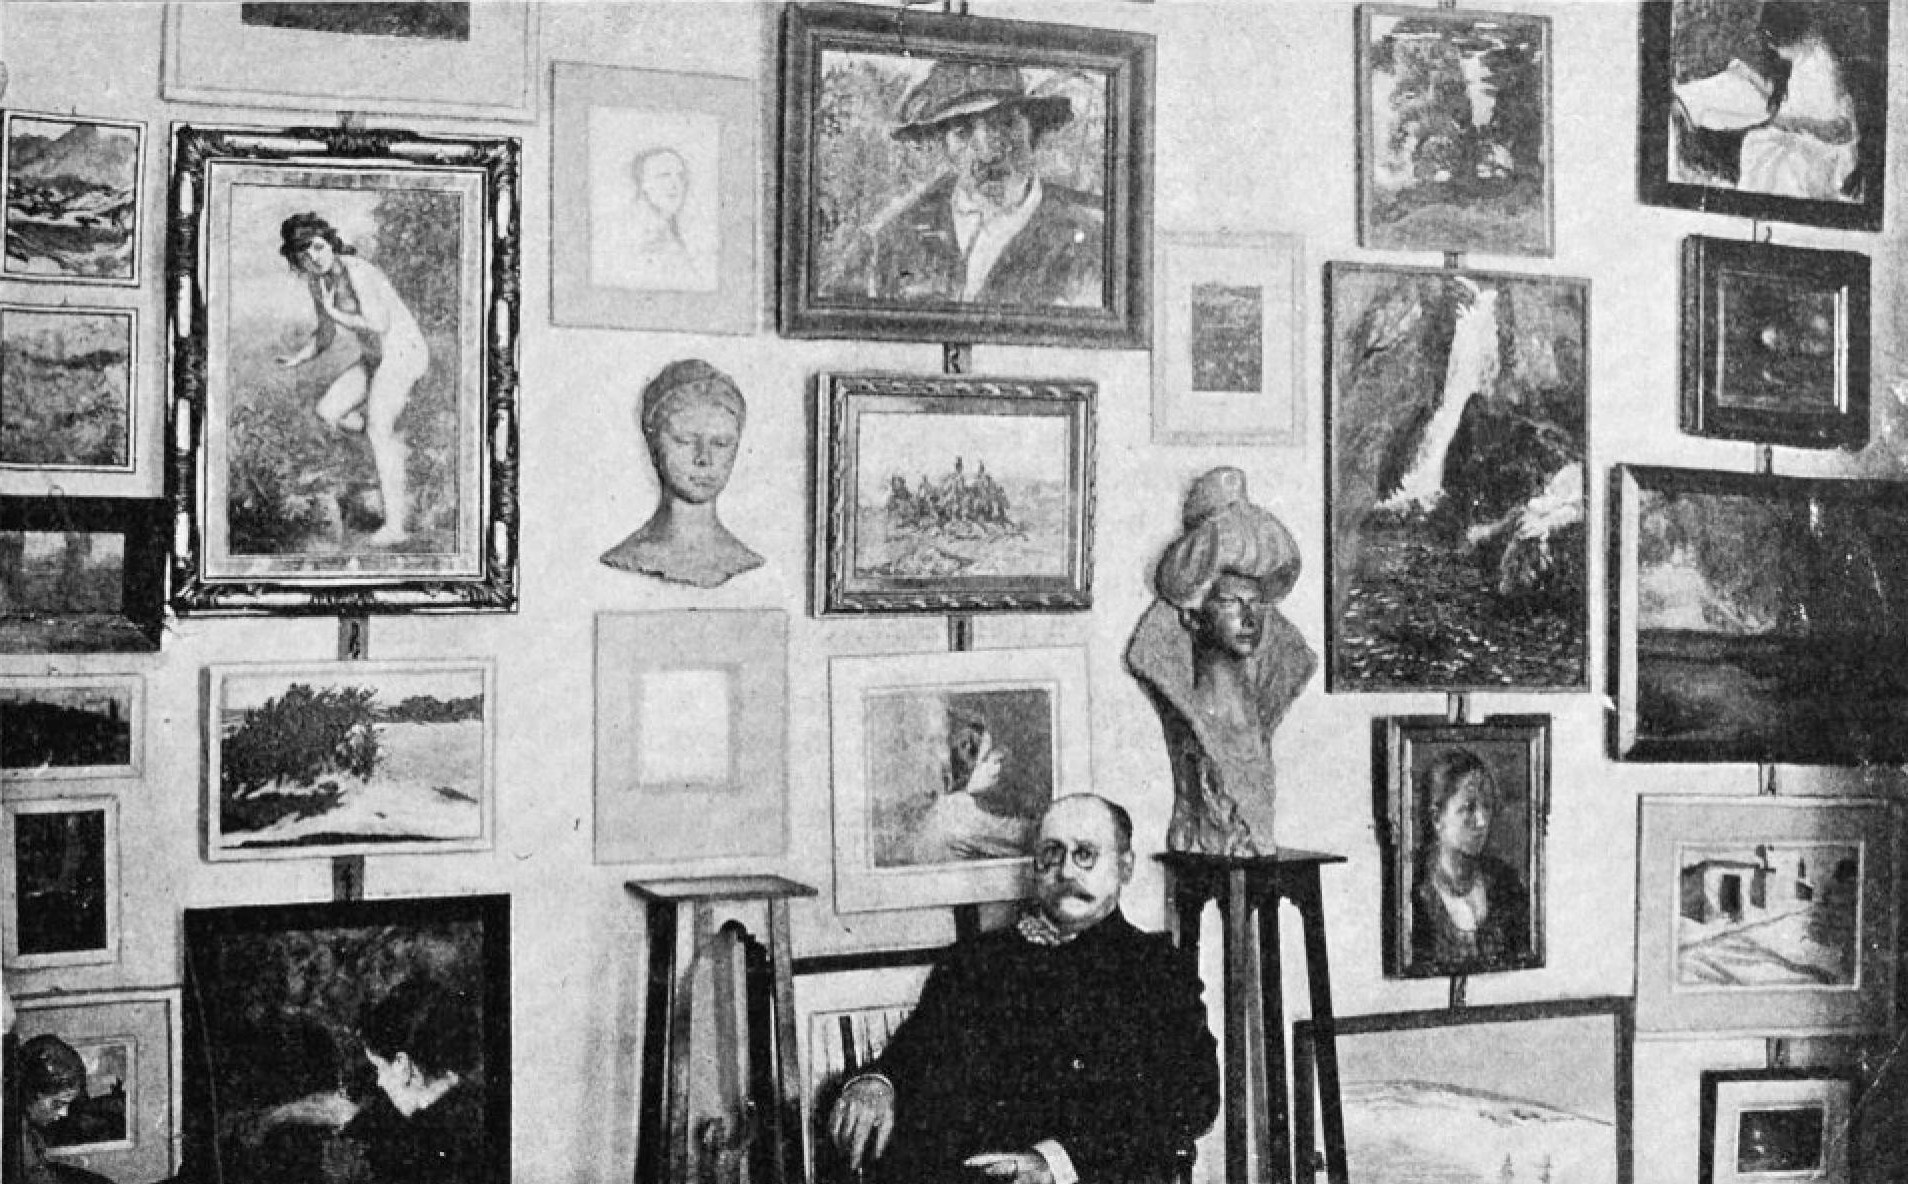 Zygmunt Sarnecki w Salonie "Ars" w 1906 roku, źródło: "Świat" 1906, nr 41